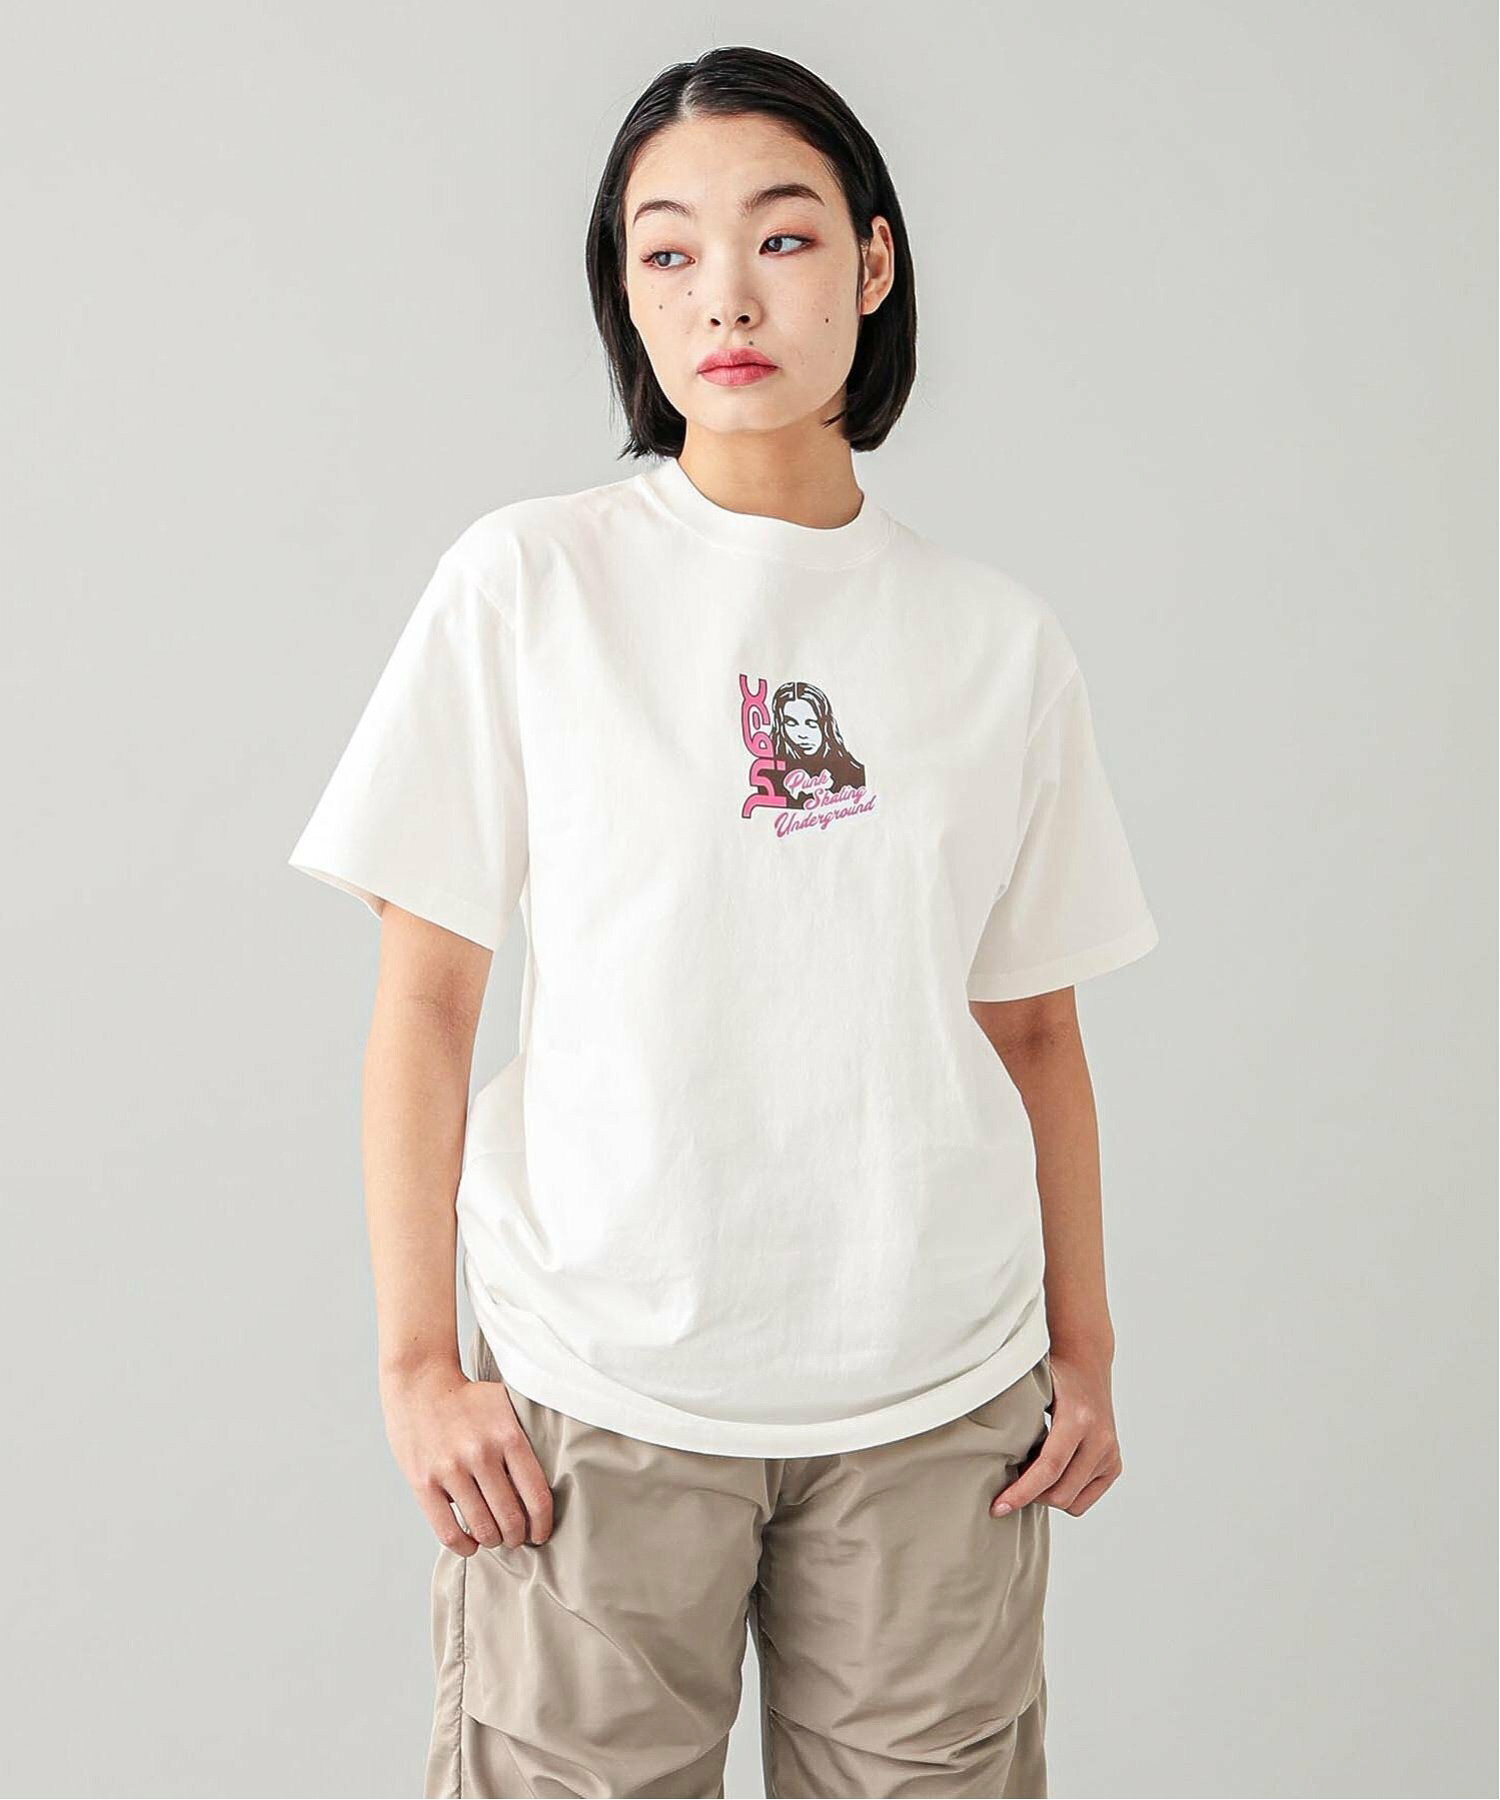 FACE AND LOGO S/S TEE X-girl  Tシャツ X-girl